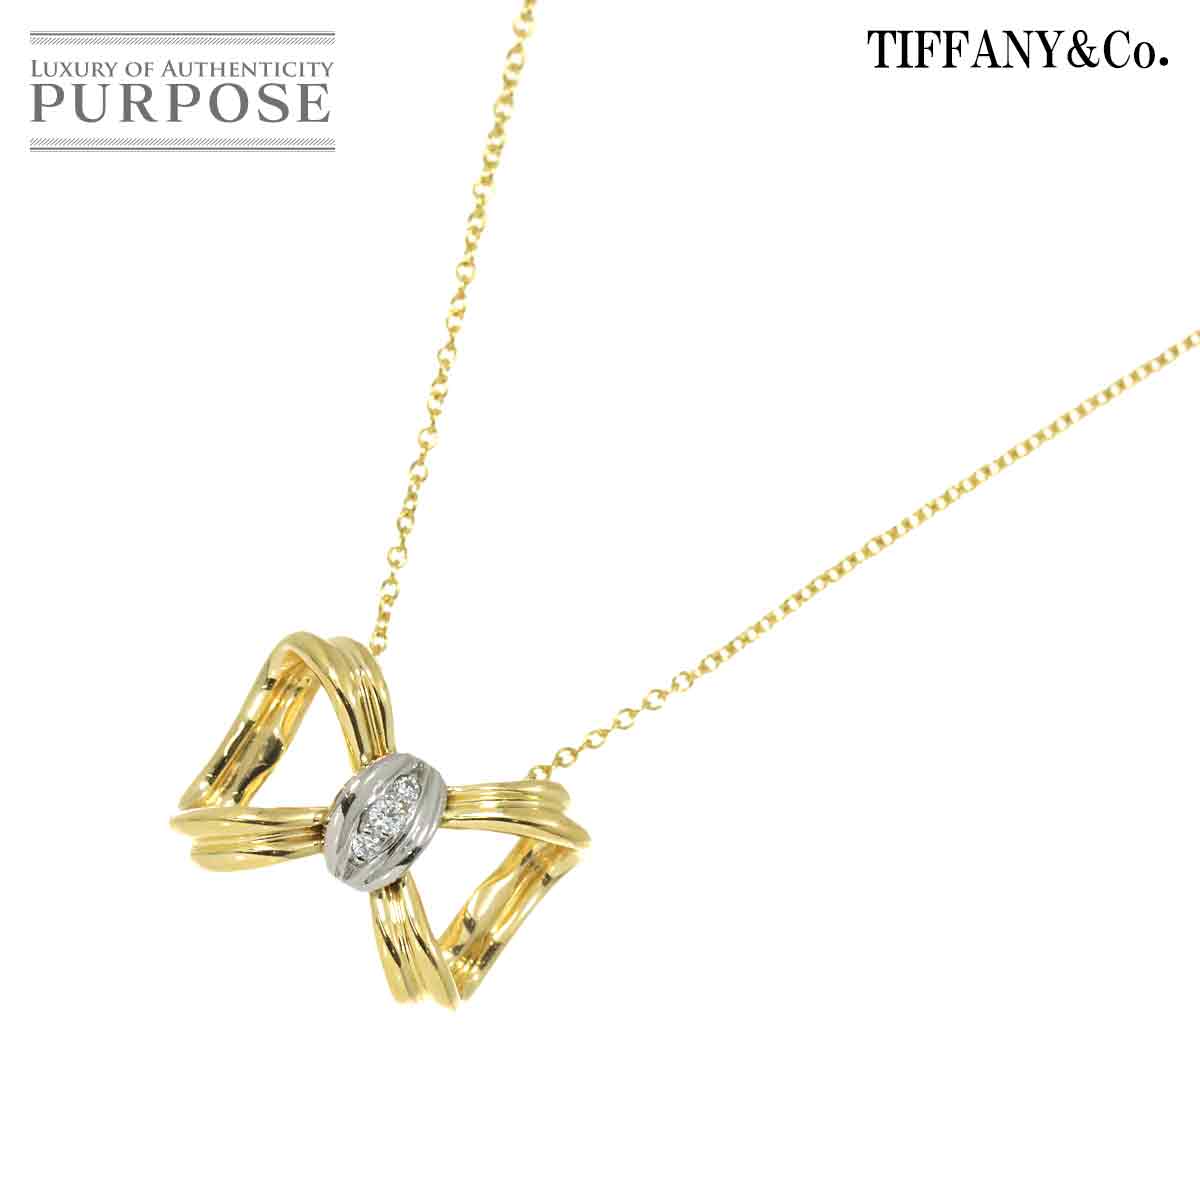 【新品同様】 ティファニー TIFFANY&Co. リボン ダイヤ ネックレス 41cm K18 YG イエローゴールド 750 Pt プラチナ Diamond Necklace【中古】